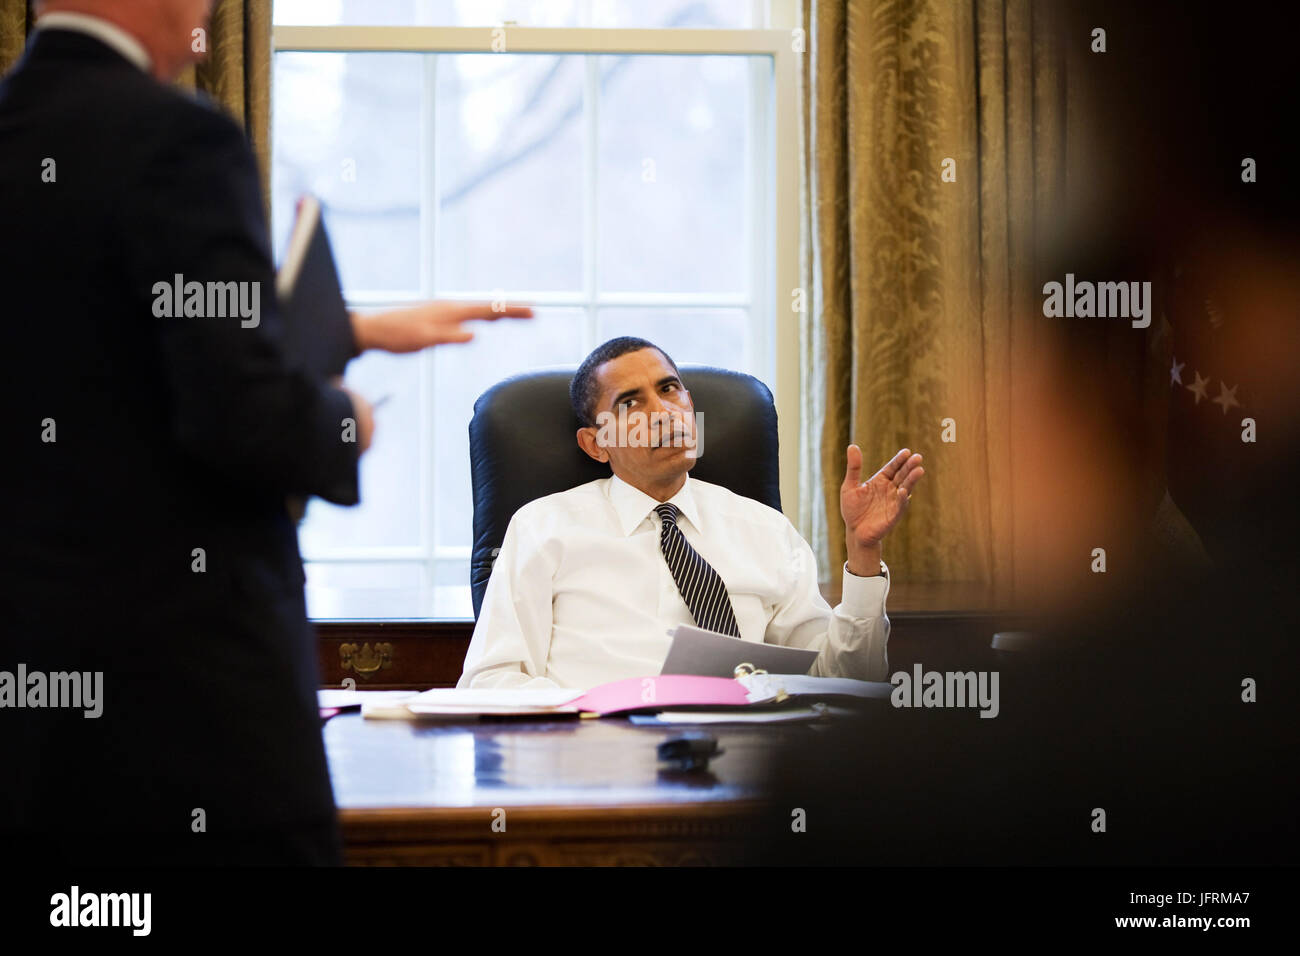 Le président Barack Obama est informé avant de faire des appels téléphoniques avec les dirigeants étrangers dans le bureau ovale 1/26/09. Photo Officiel de la Maison Blanche par Pete Souza Banque D'Images